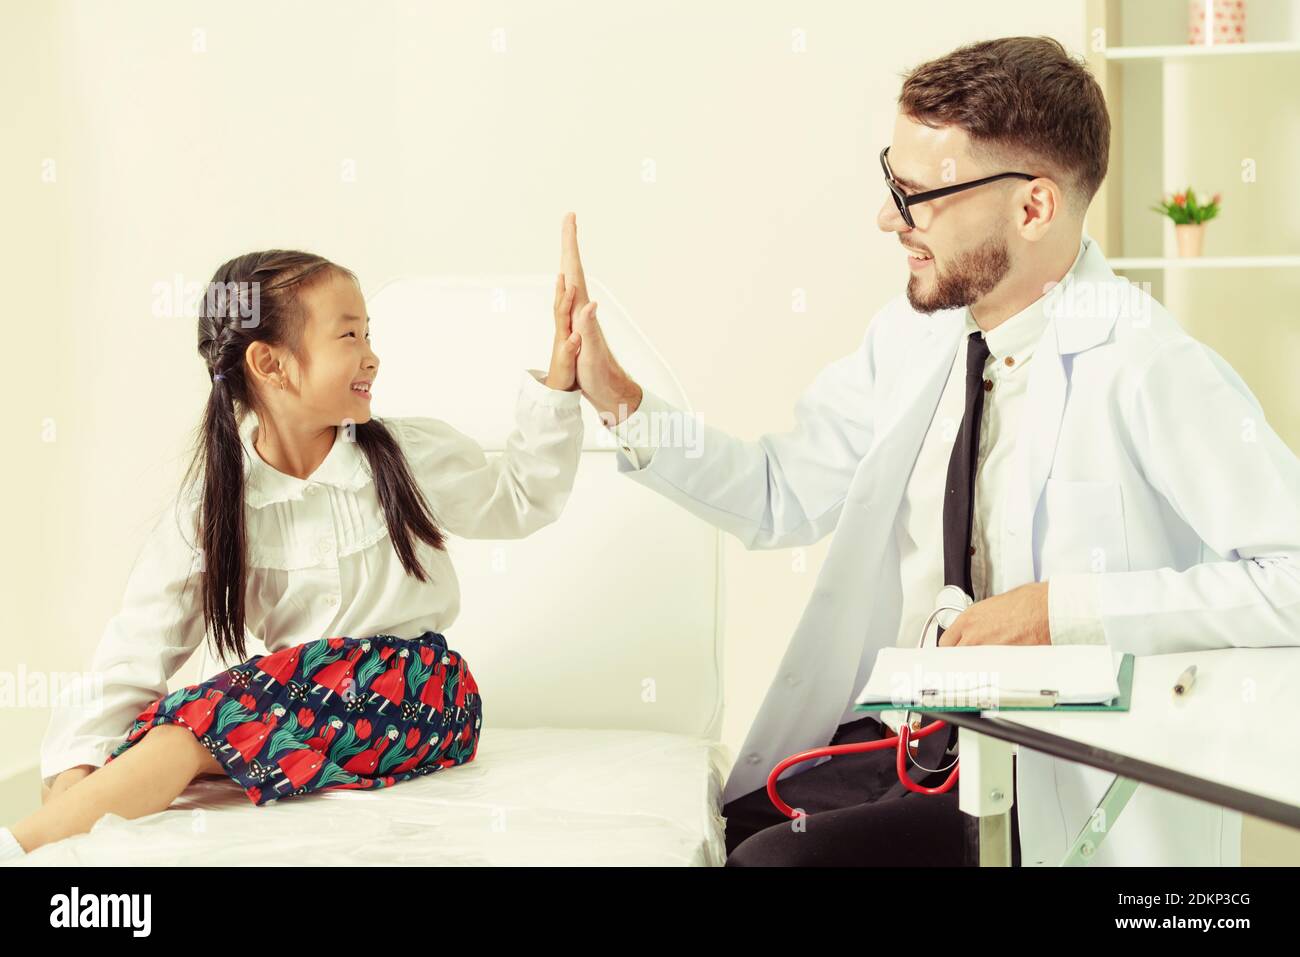 Jeune homme médecin examinant petit enfant à l'hôpital. L'enfant est heureux et pas peur du médecin. Soins médicaux les enfants concept. Banque D'Images